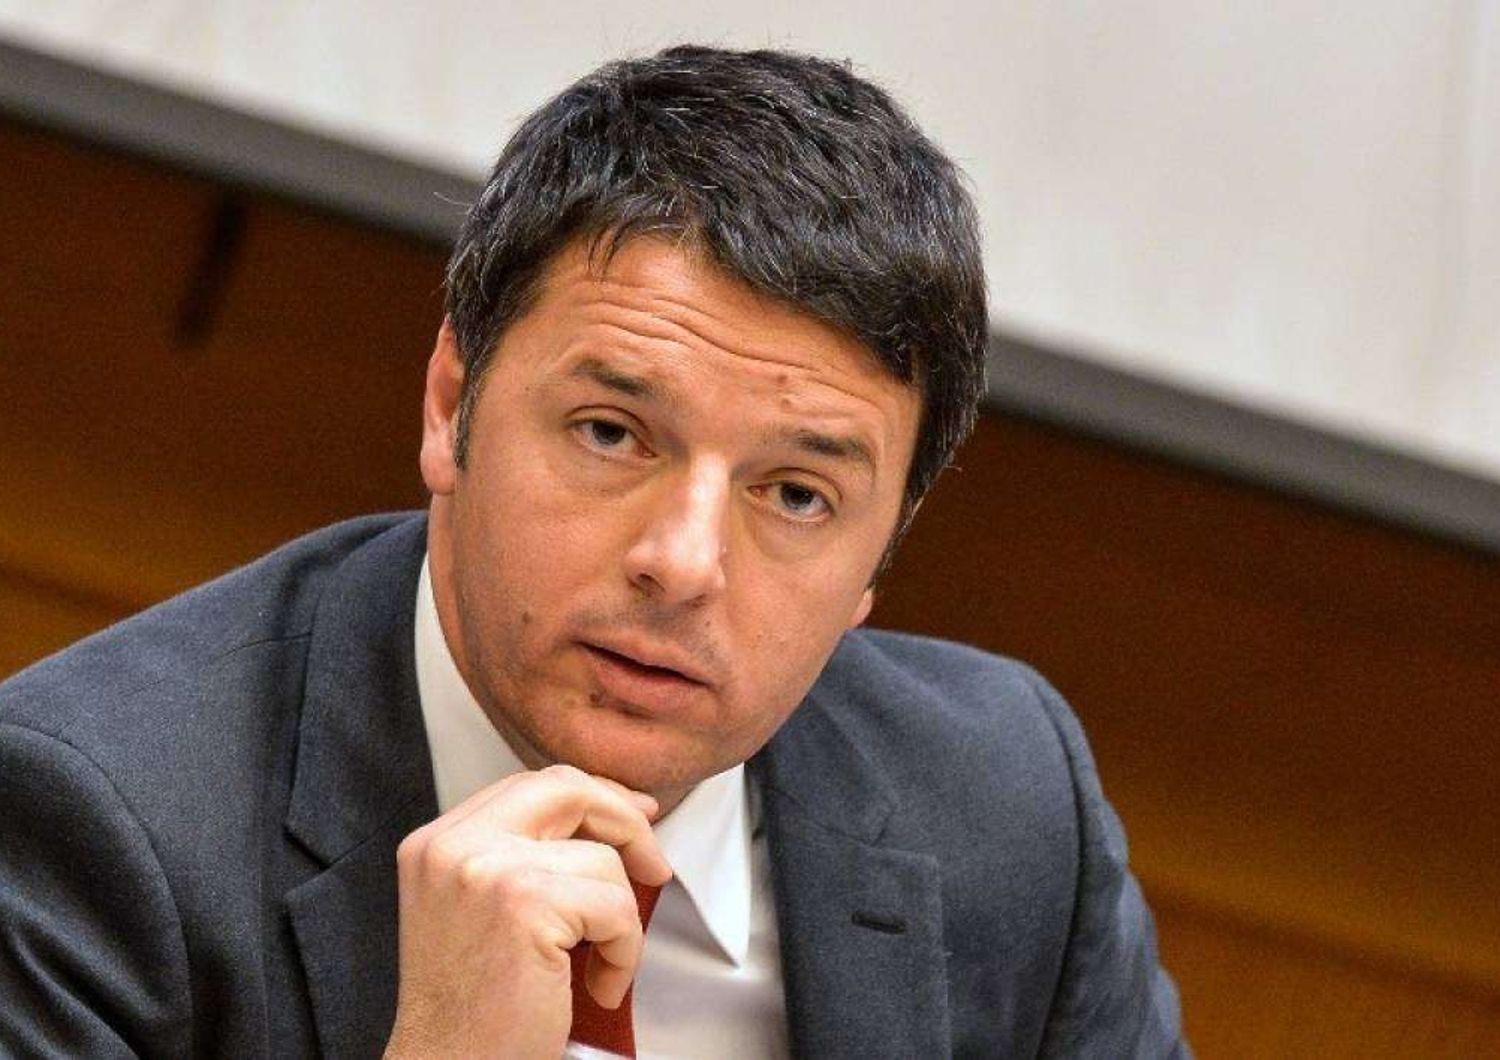 Renzi riunisce i parlamentari Pd, Bersani assente "Basta spot"